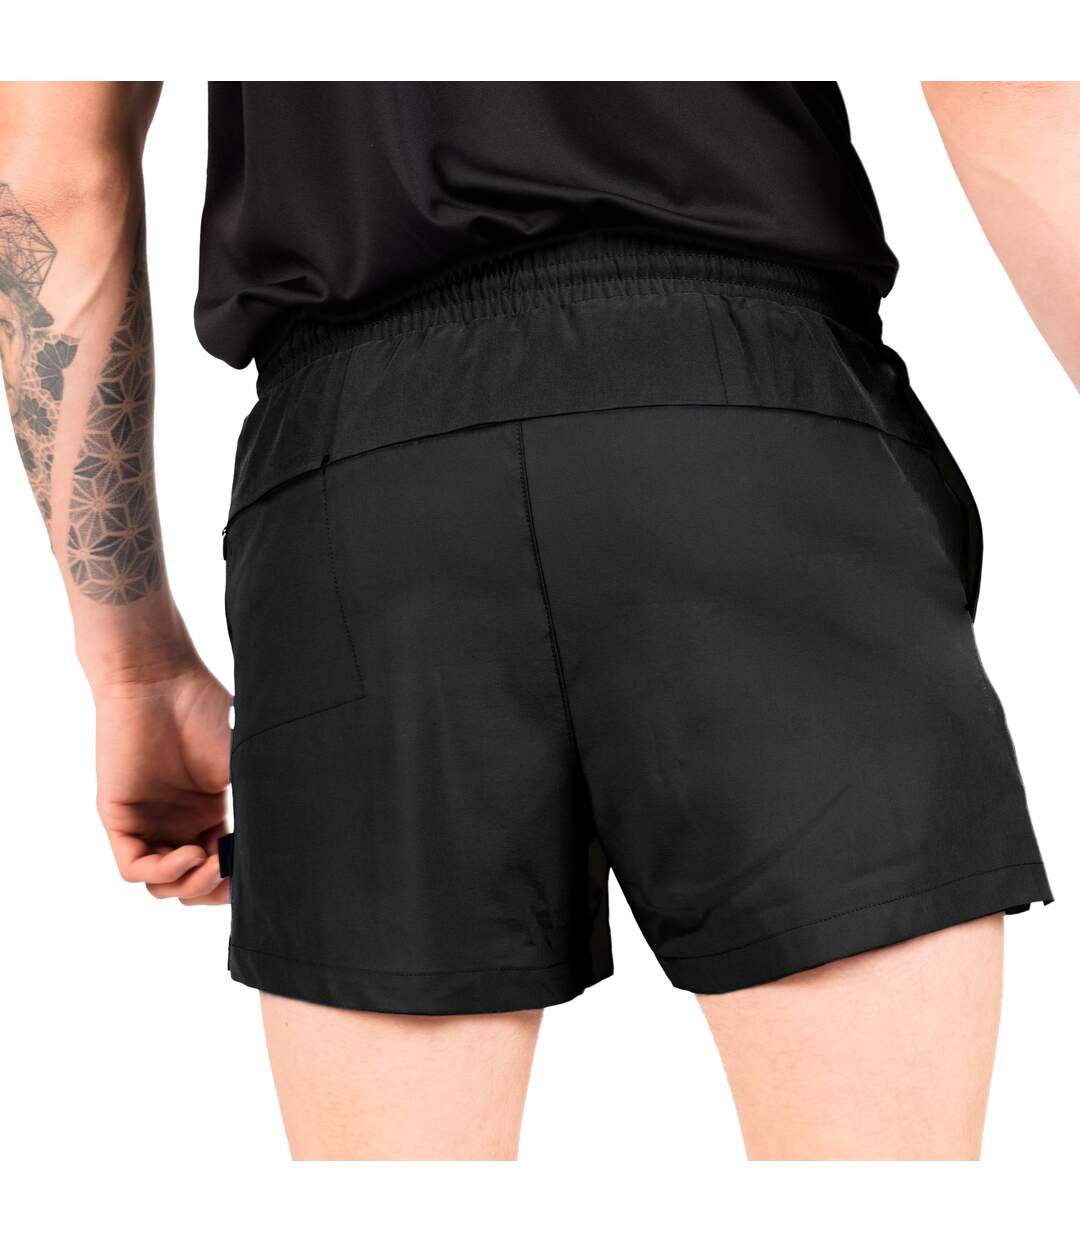 Dare 2B Mens Retread Lightweight Shorts (Black) - UTRG5847